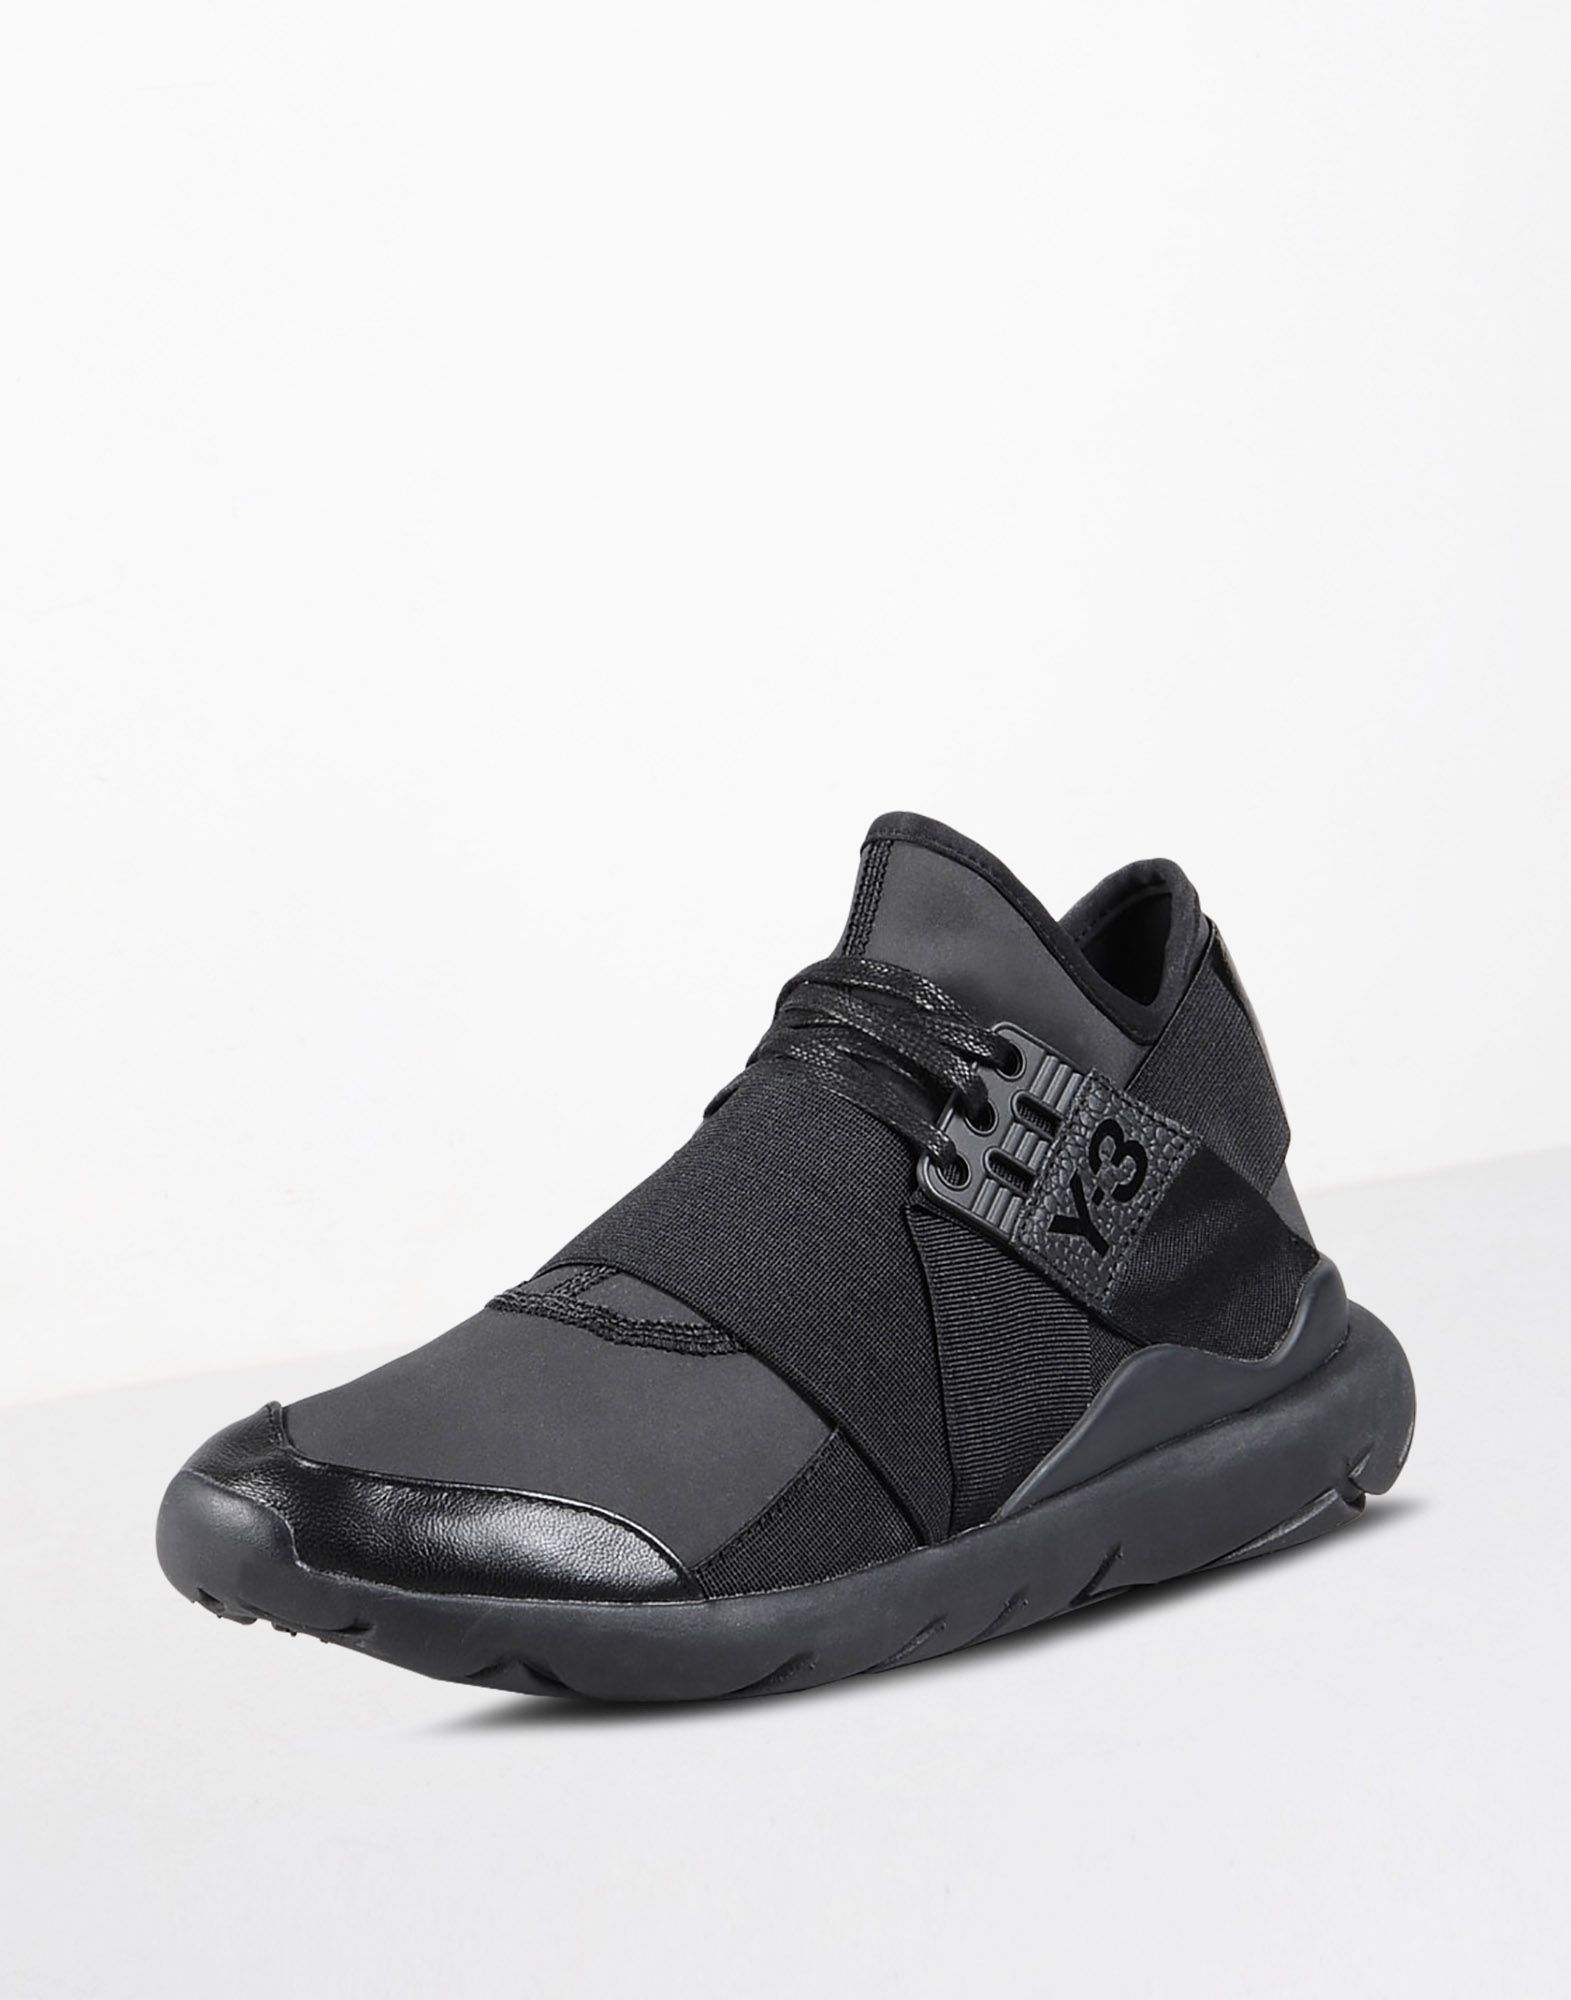 Y 3 QASA ELLE LACE ‎ ‎Sneakers‎ ‎ ‎ | Adidas Y-3 Official Site